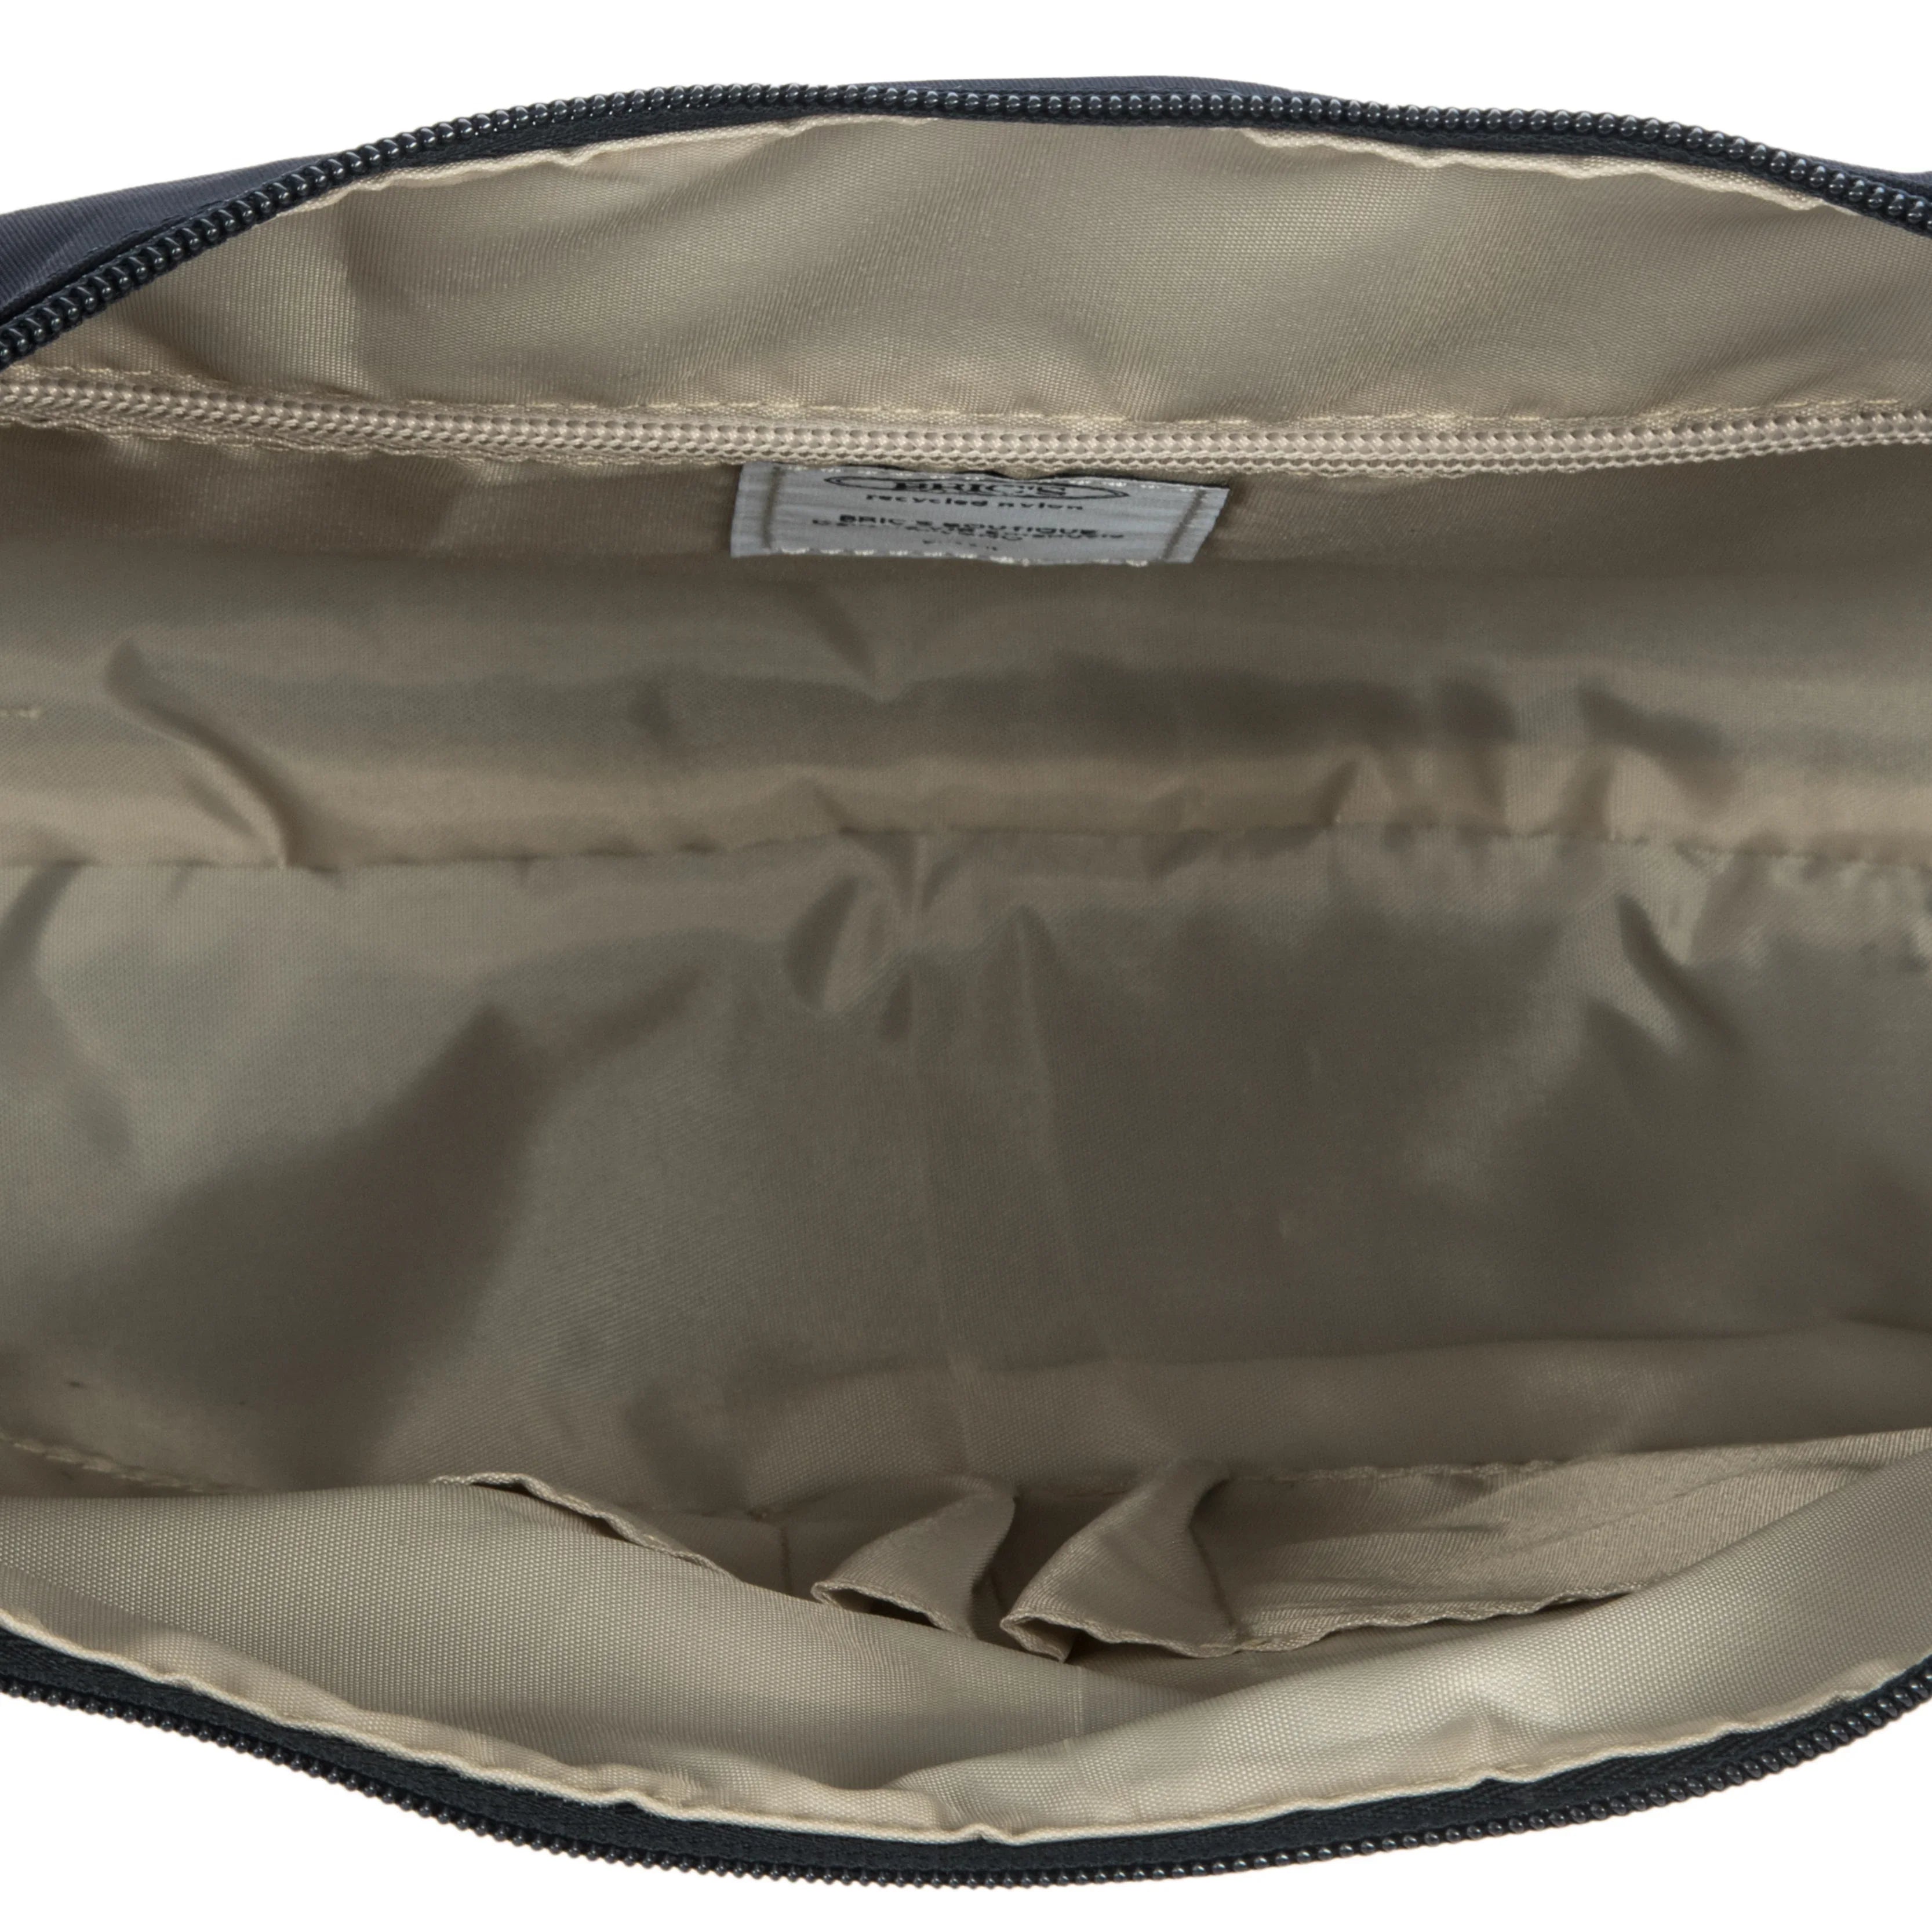 Brics X-Bag shoulder bag 38 cm - Geranium